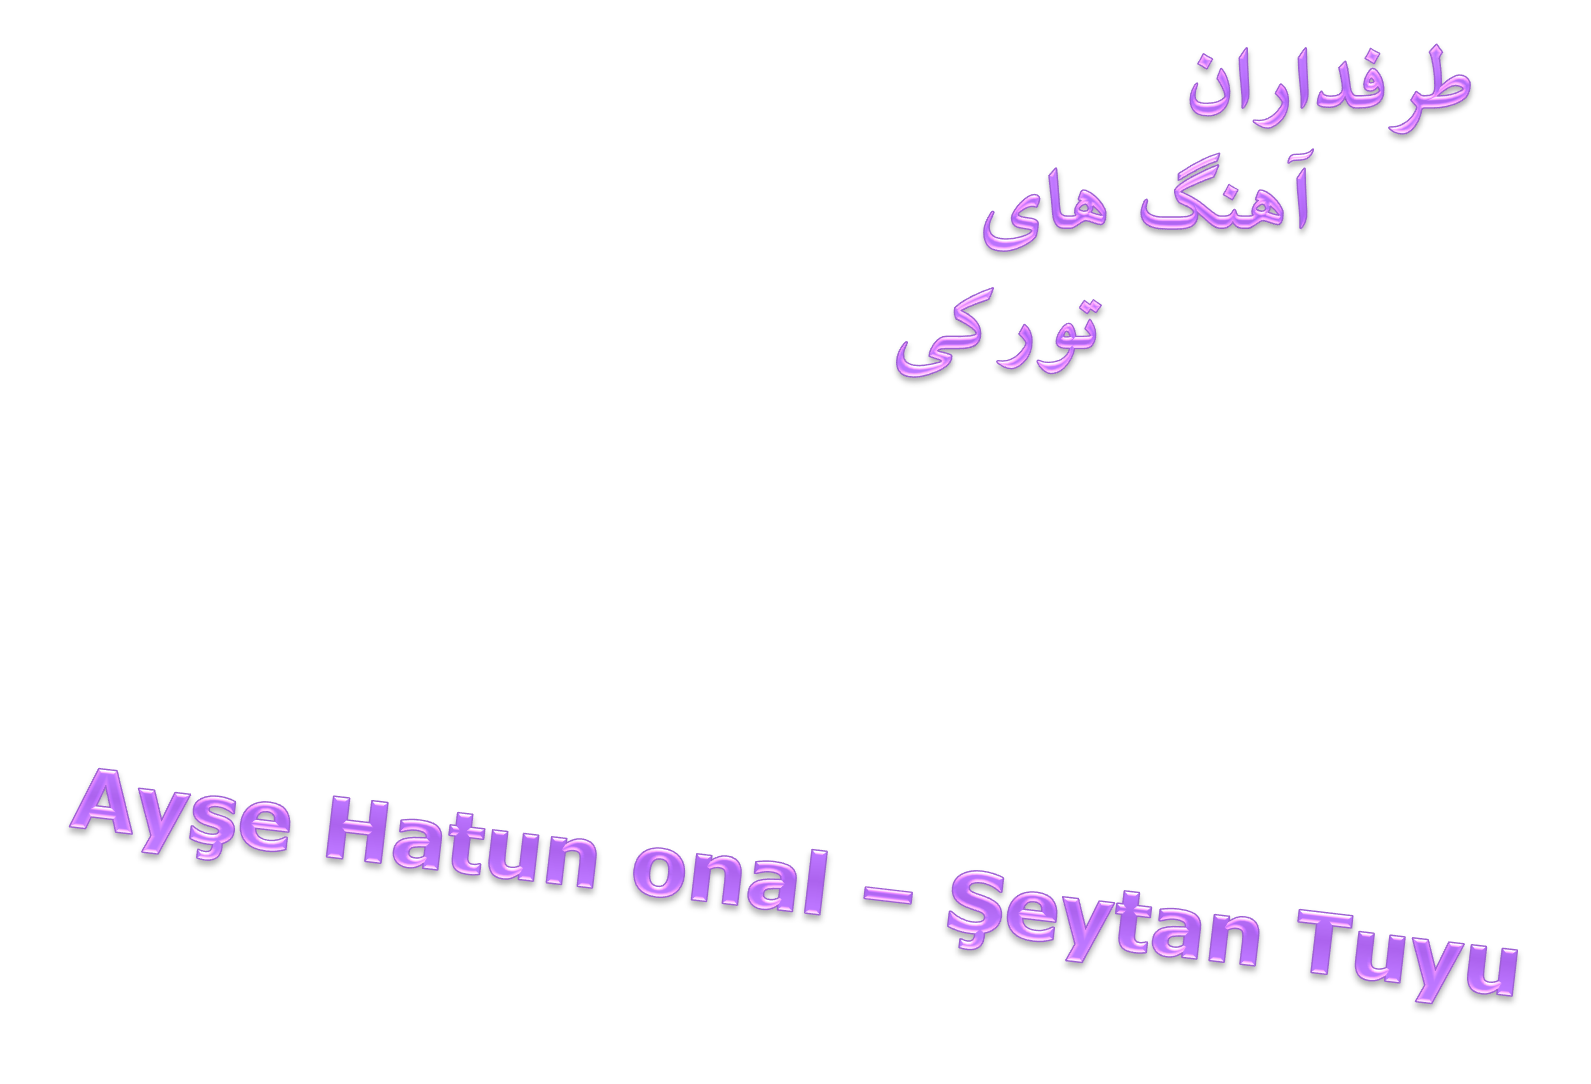 دانلود آهنگ جدید و بسیار زیبای Ayse Hatun Onal به نام Seytan Tuyu